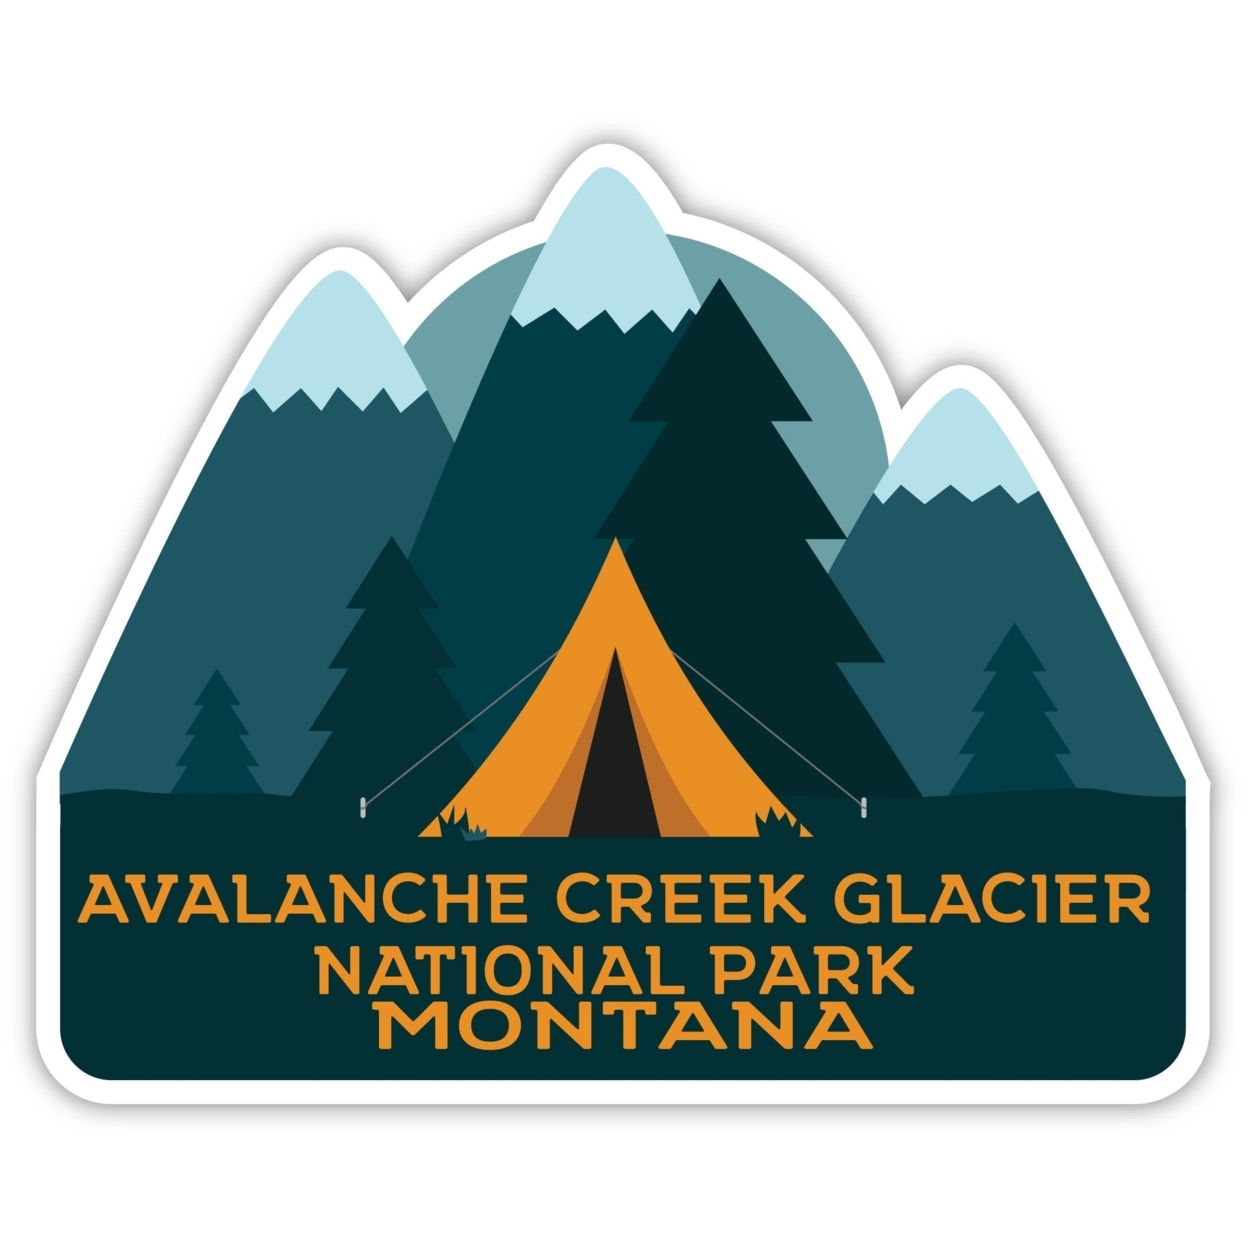 Avalanche Creek Glacier National Park Montana Souvenir Decorative Stickers (Choose Theme And Size) - Single Unit, 6-Inch, Tent